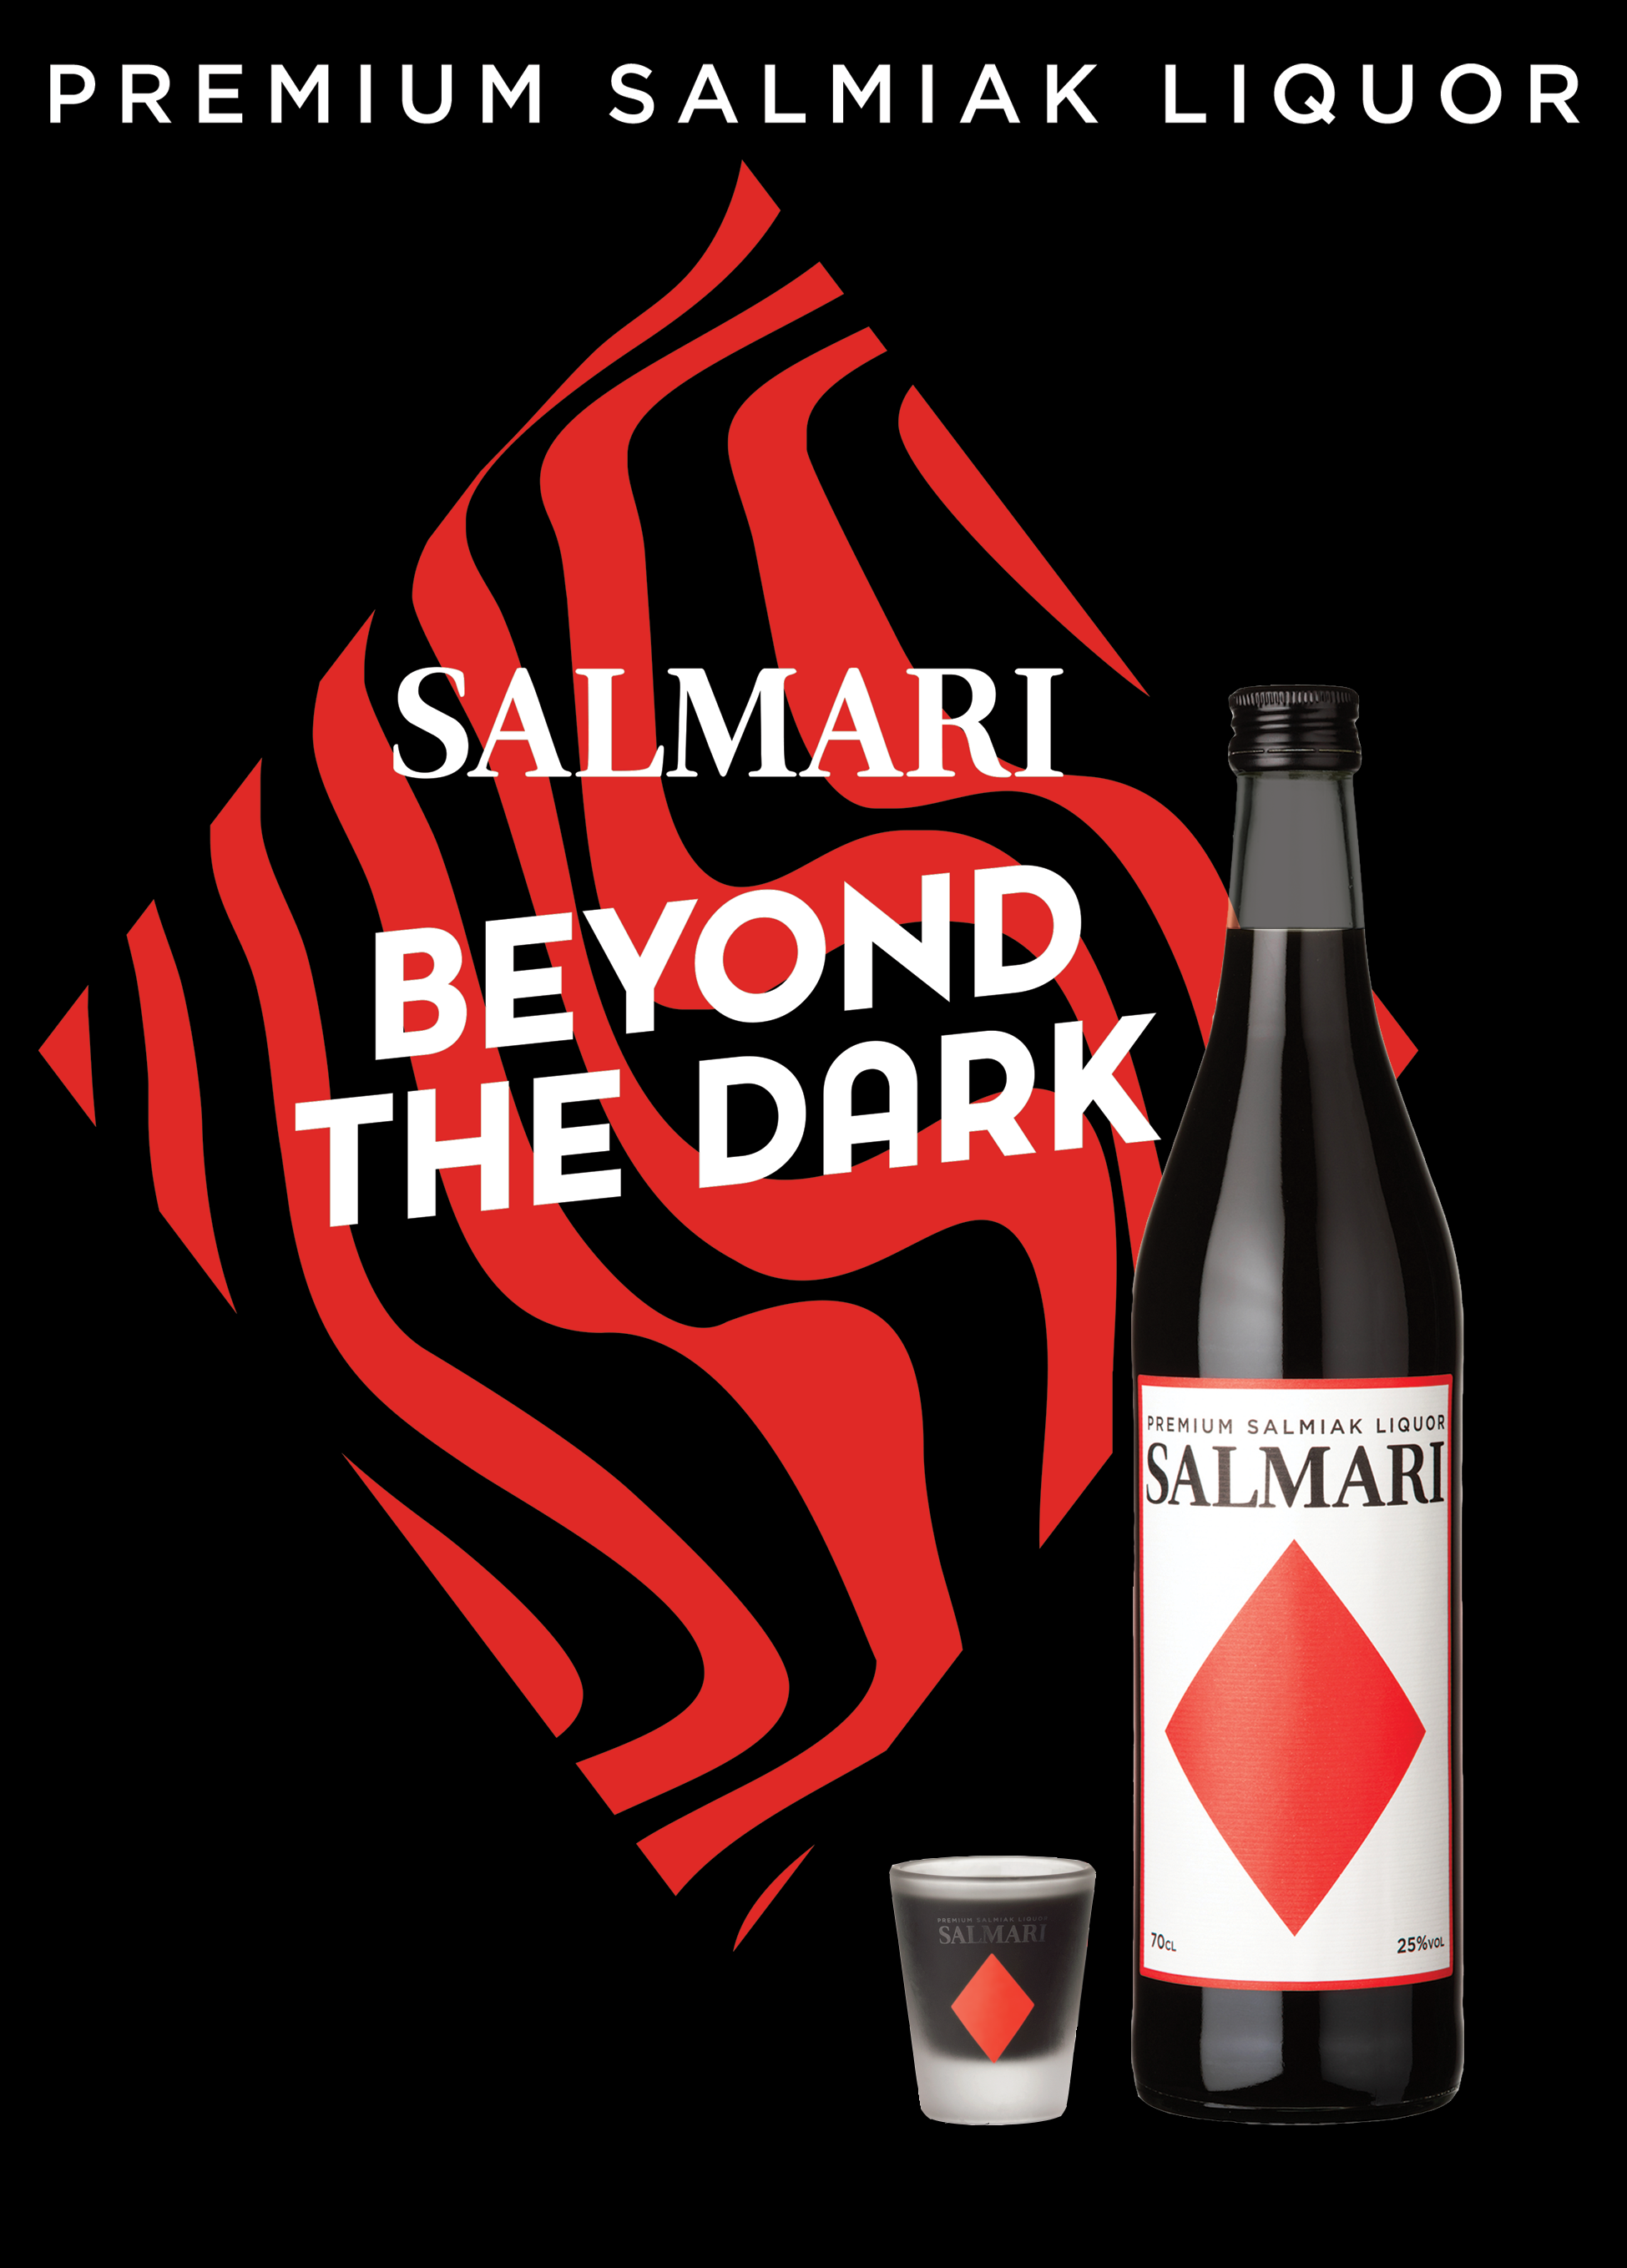 Salmari - Premium Salmiak Likör 0,7l 25%vol.